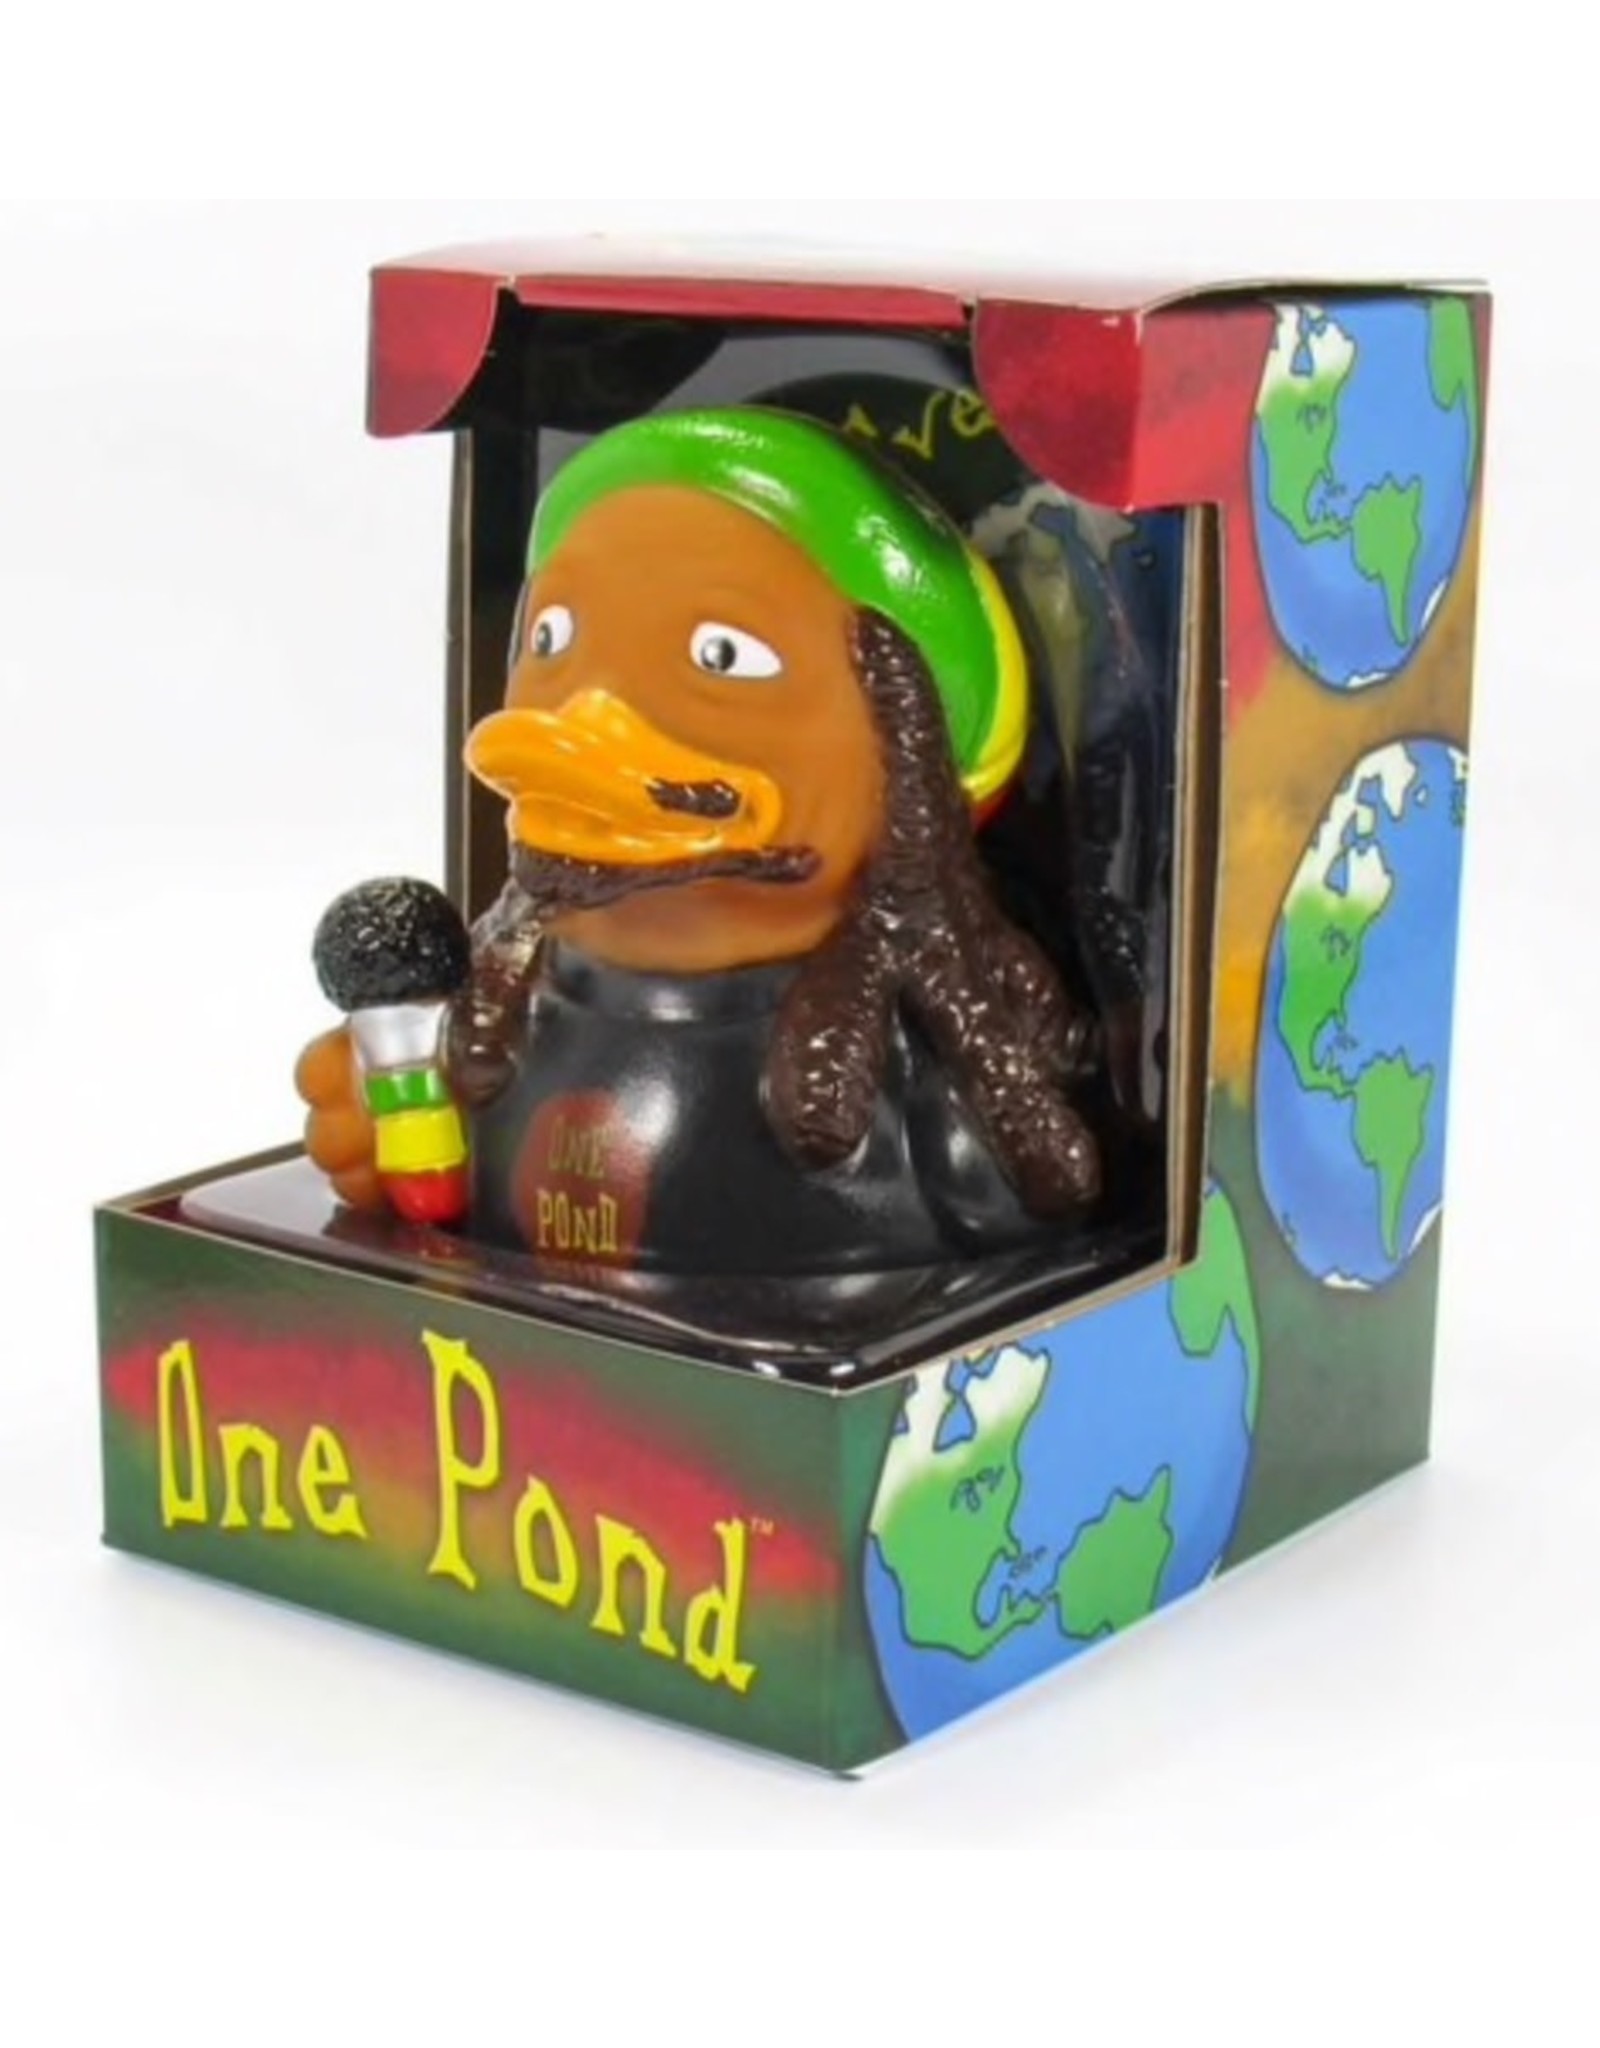 Canard "One Pond"